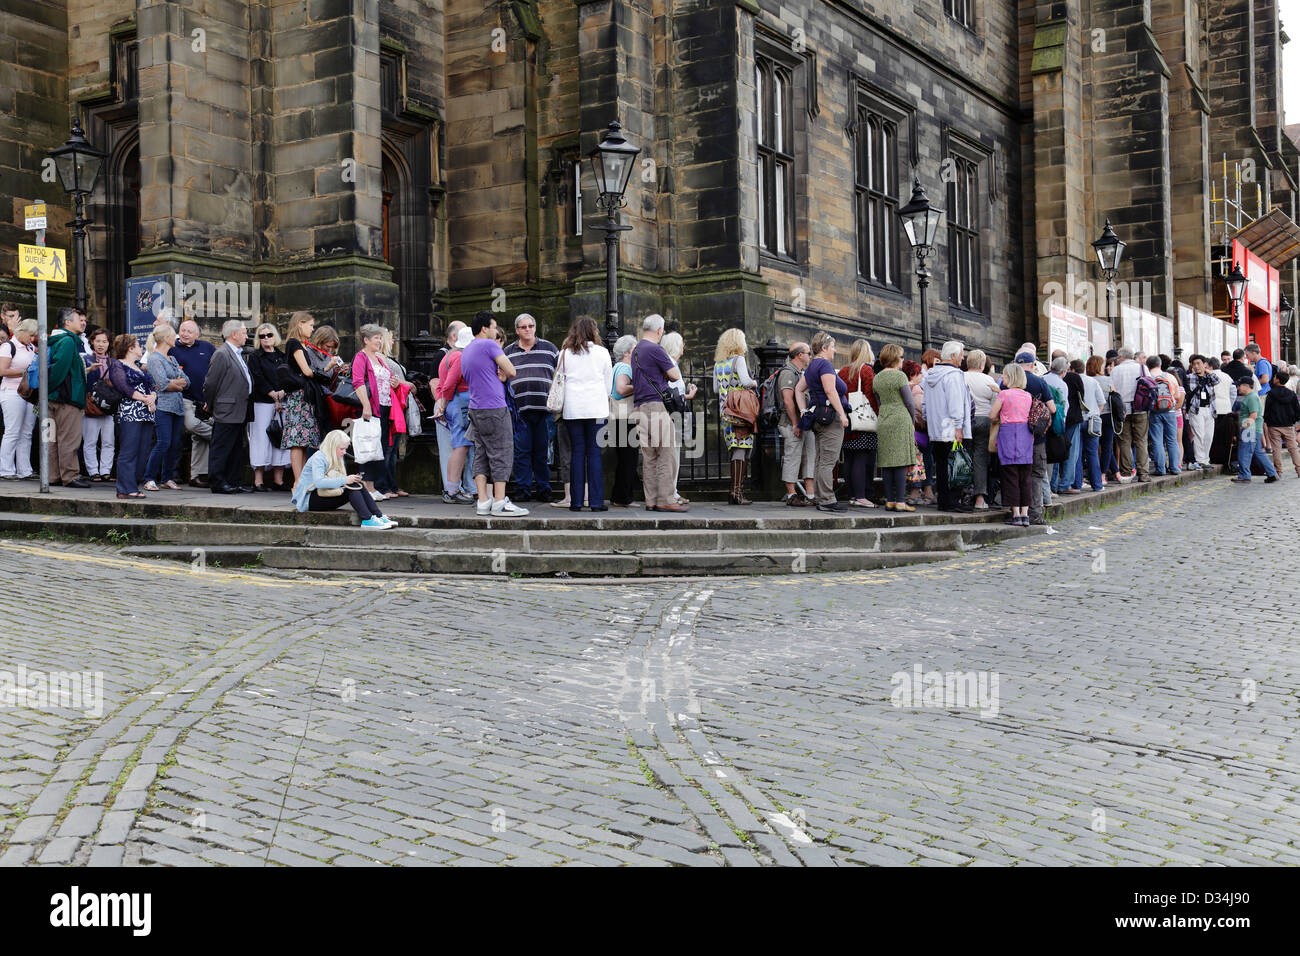 Des gens font la queue au lieu de l'Assembly Hall de Mound place pendant le Festival Fringe d'Édimbourg, en Écosse, au Royaume-Uni Banque D'Images